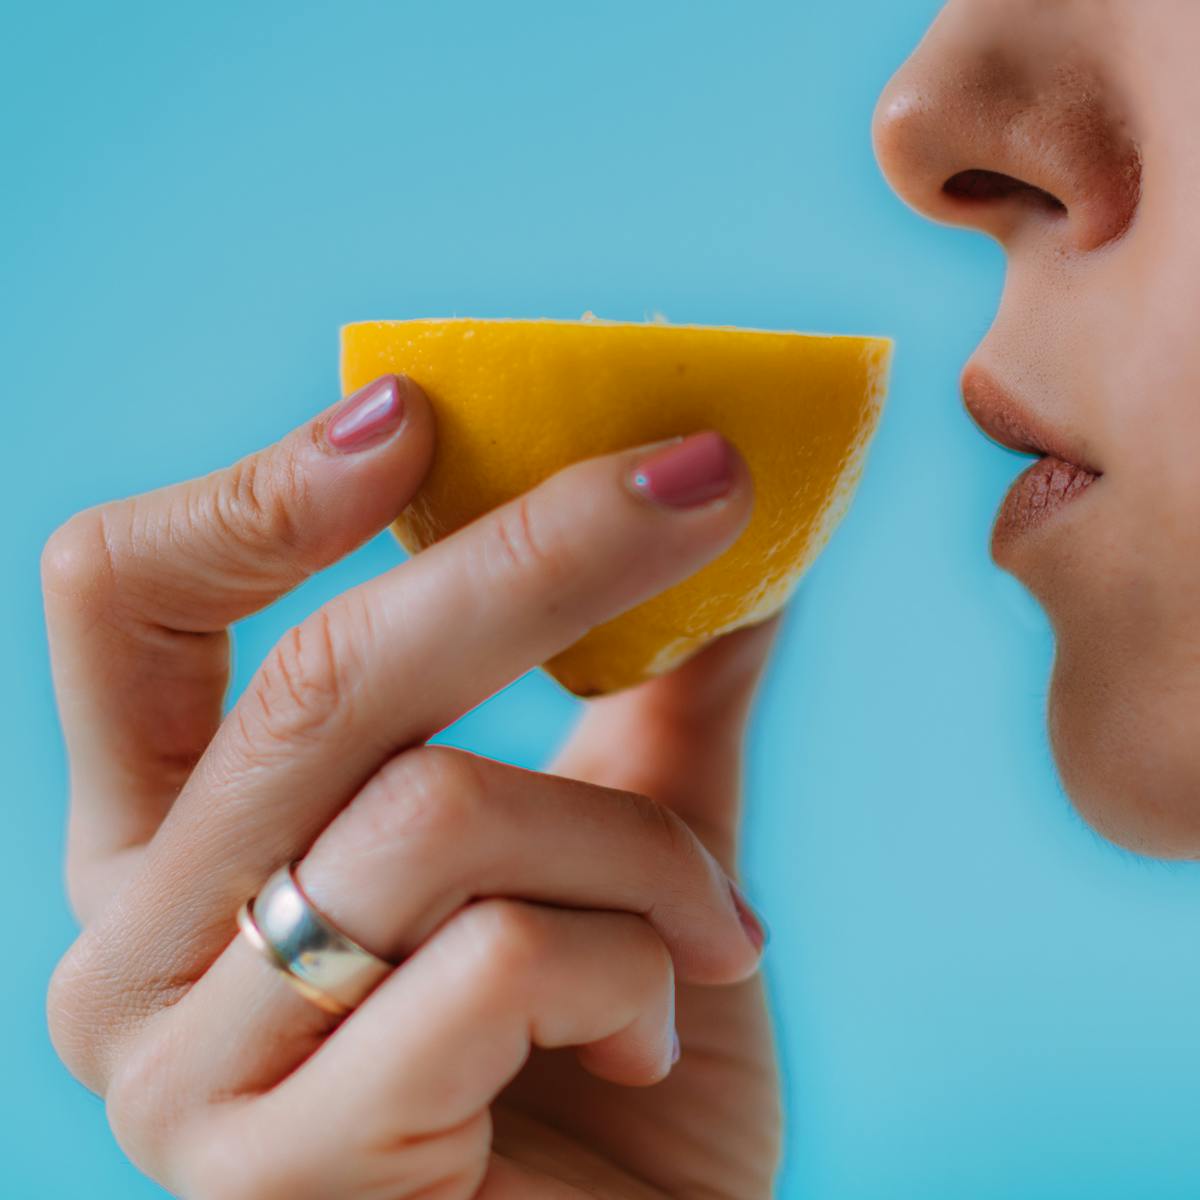 Por qué la enfermedad COVID-19 nos hace perder el olfato y el gusto?